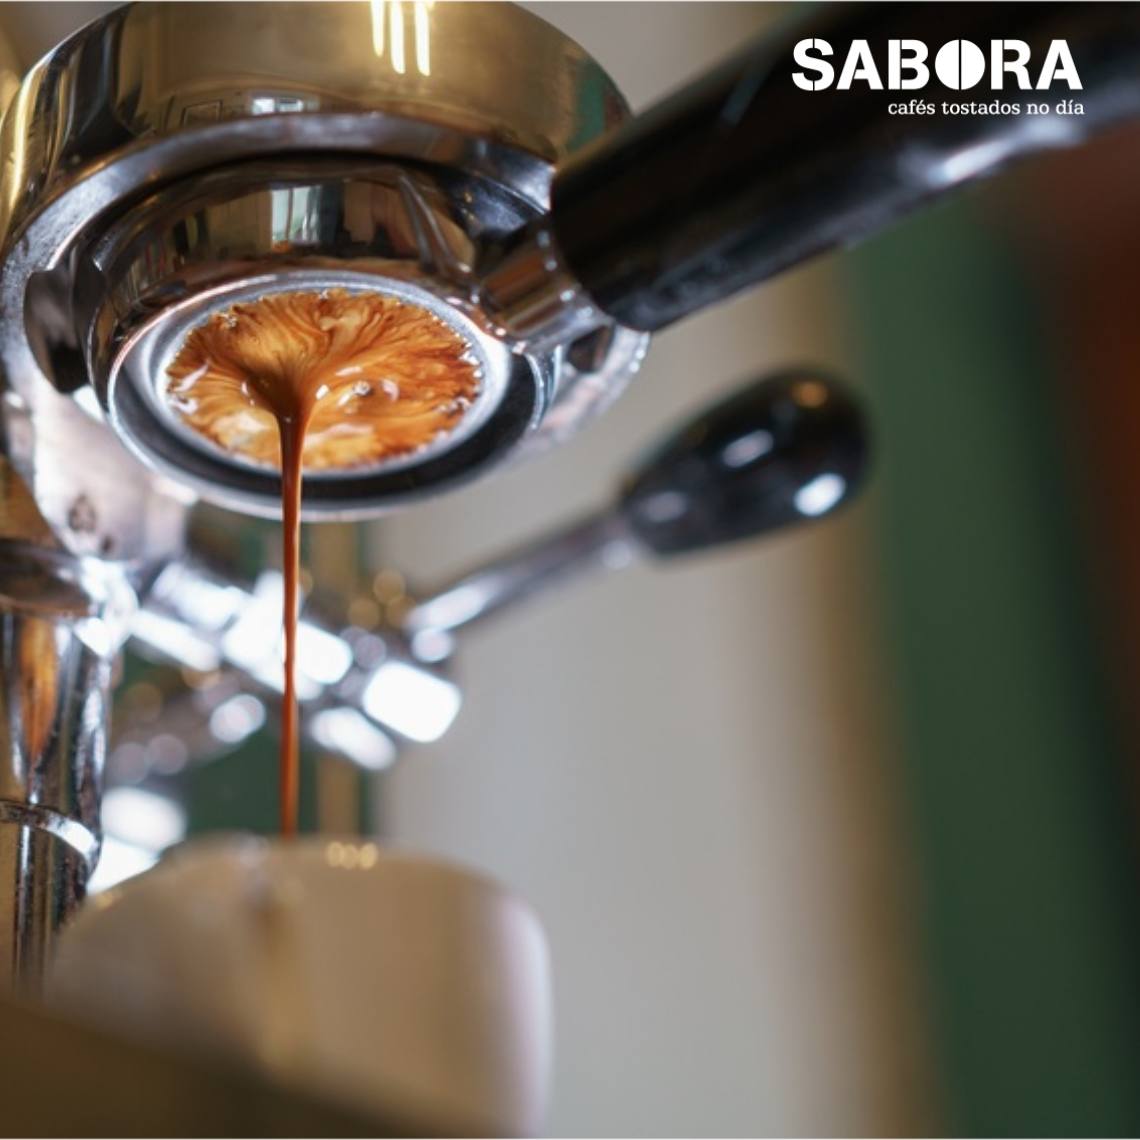 El café espresso, historia centenaria. | SABORA Cafés Tostados no día